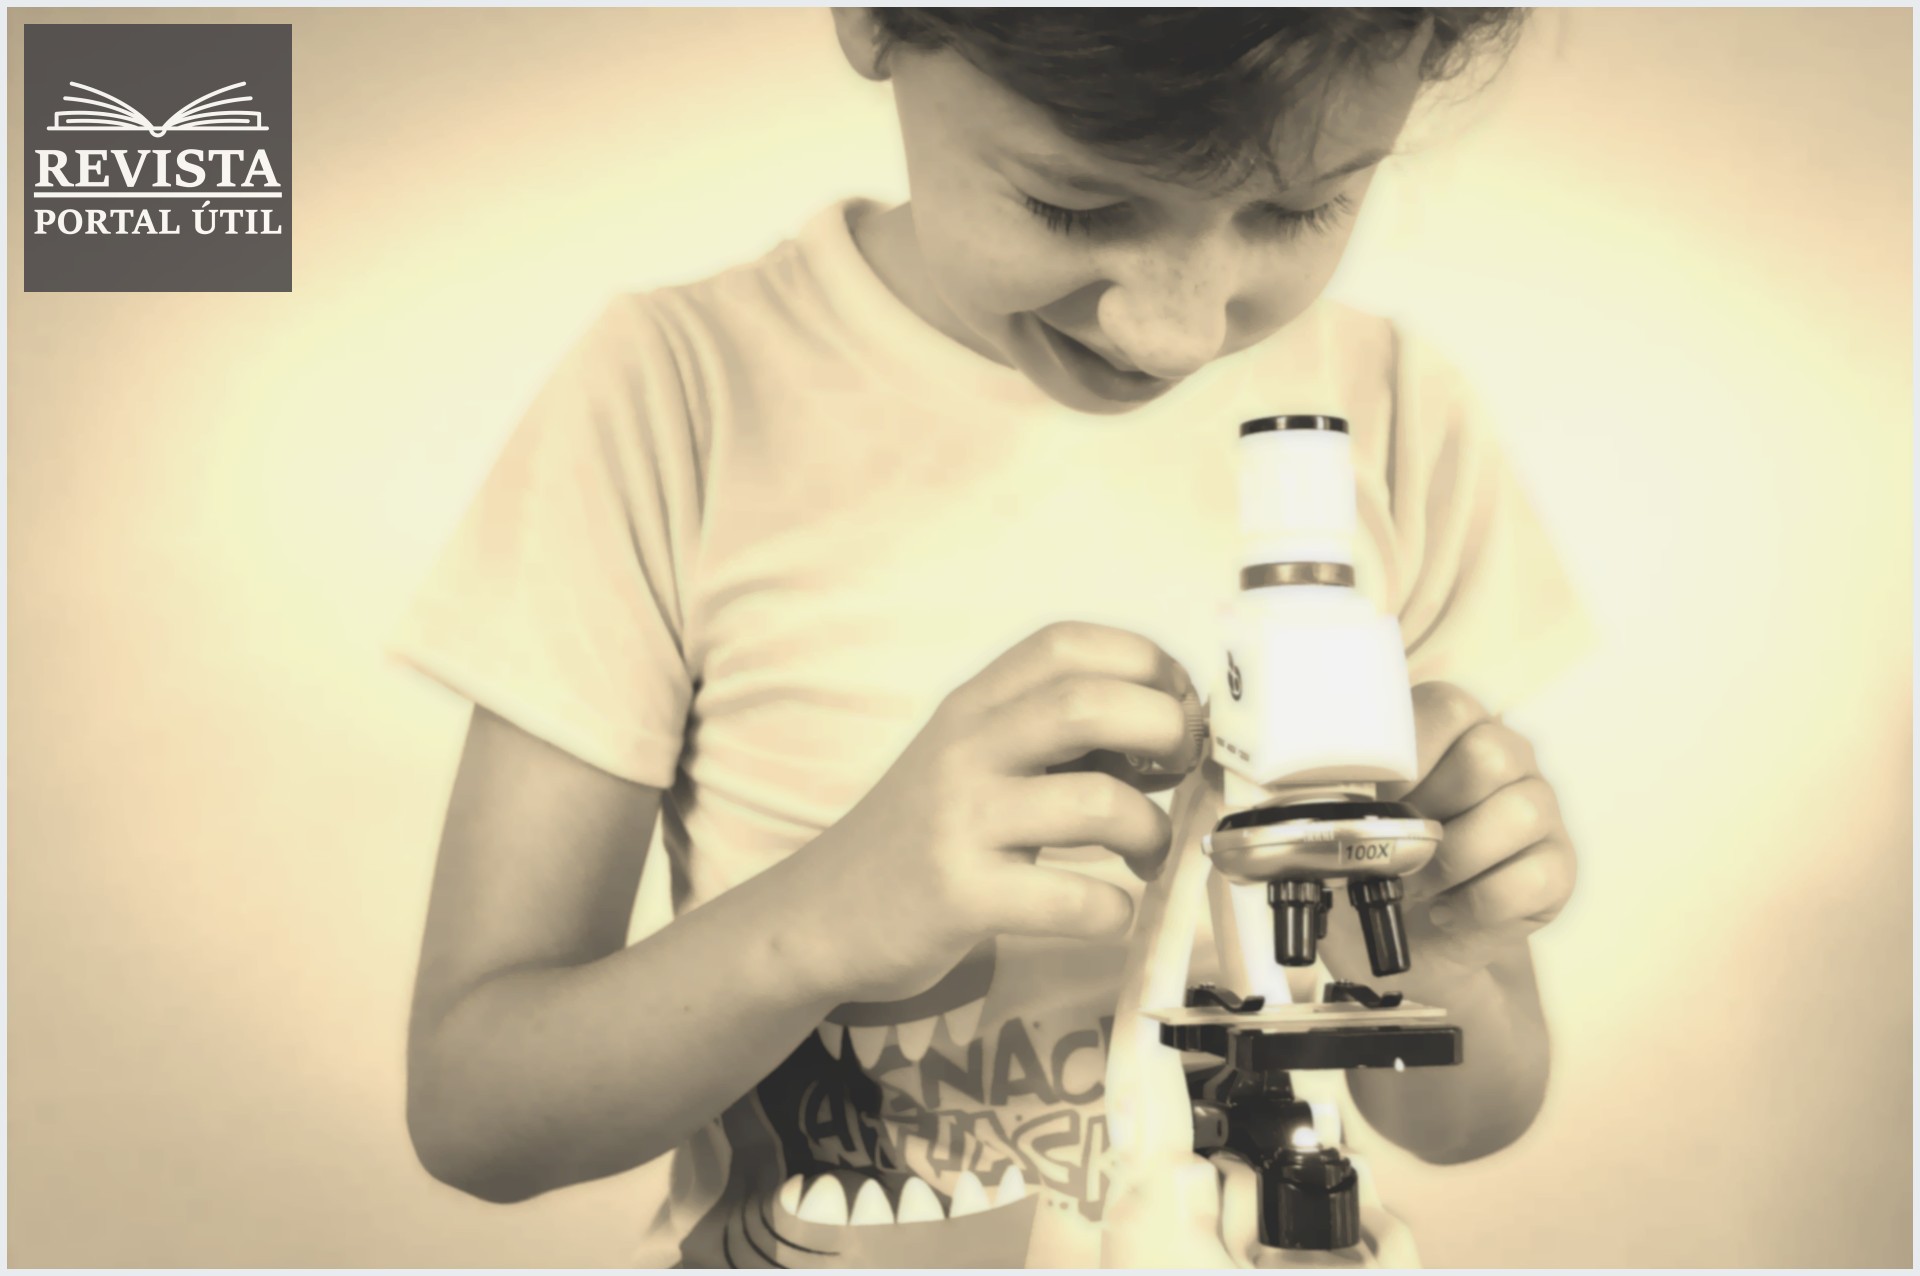 Criança brincando com um microscópio